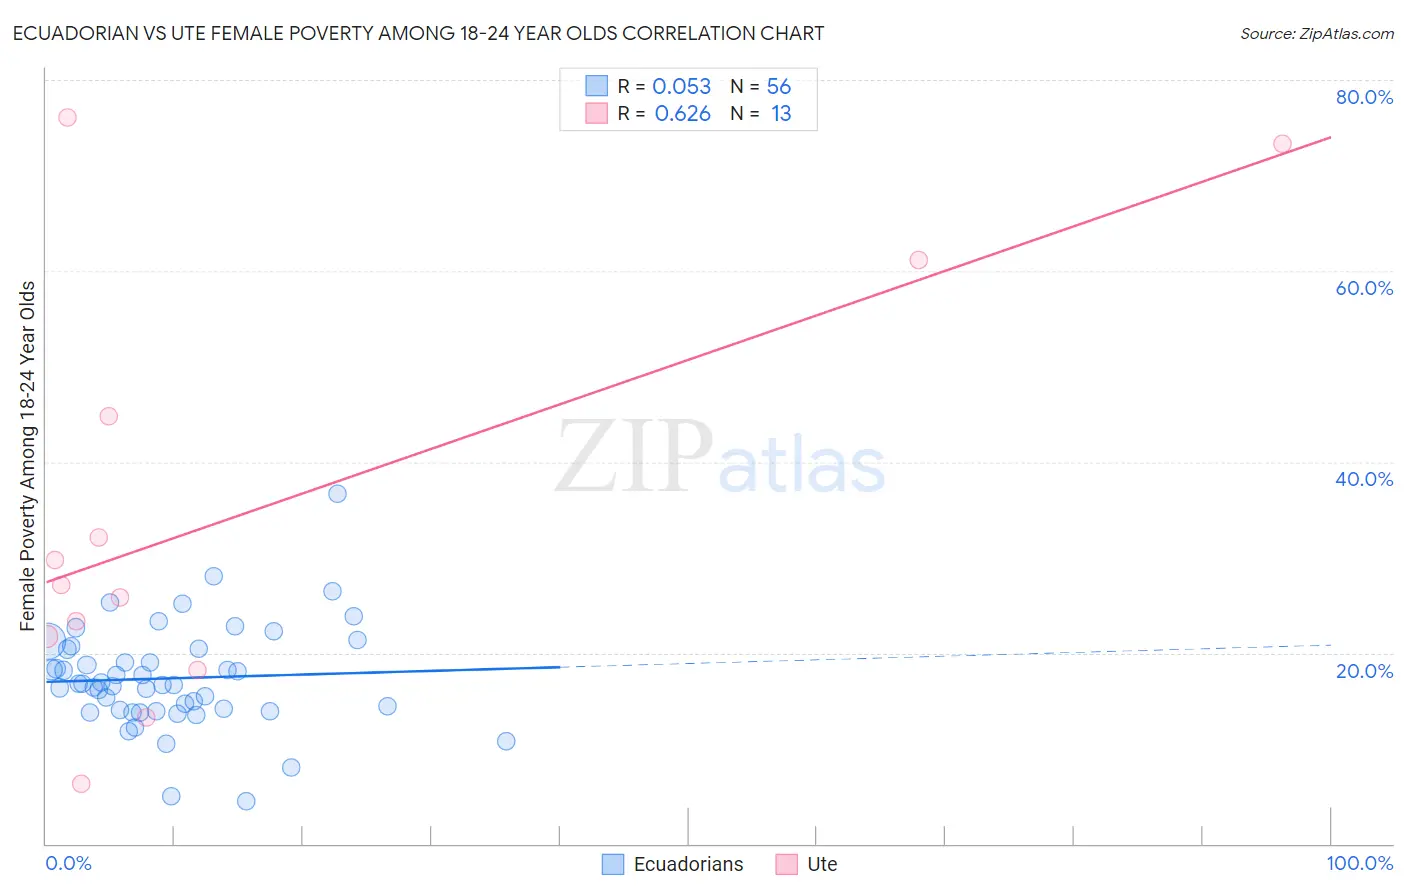 Ecuadorian vs Ute Female Poverty Among 18-24 Year Olds